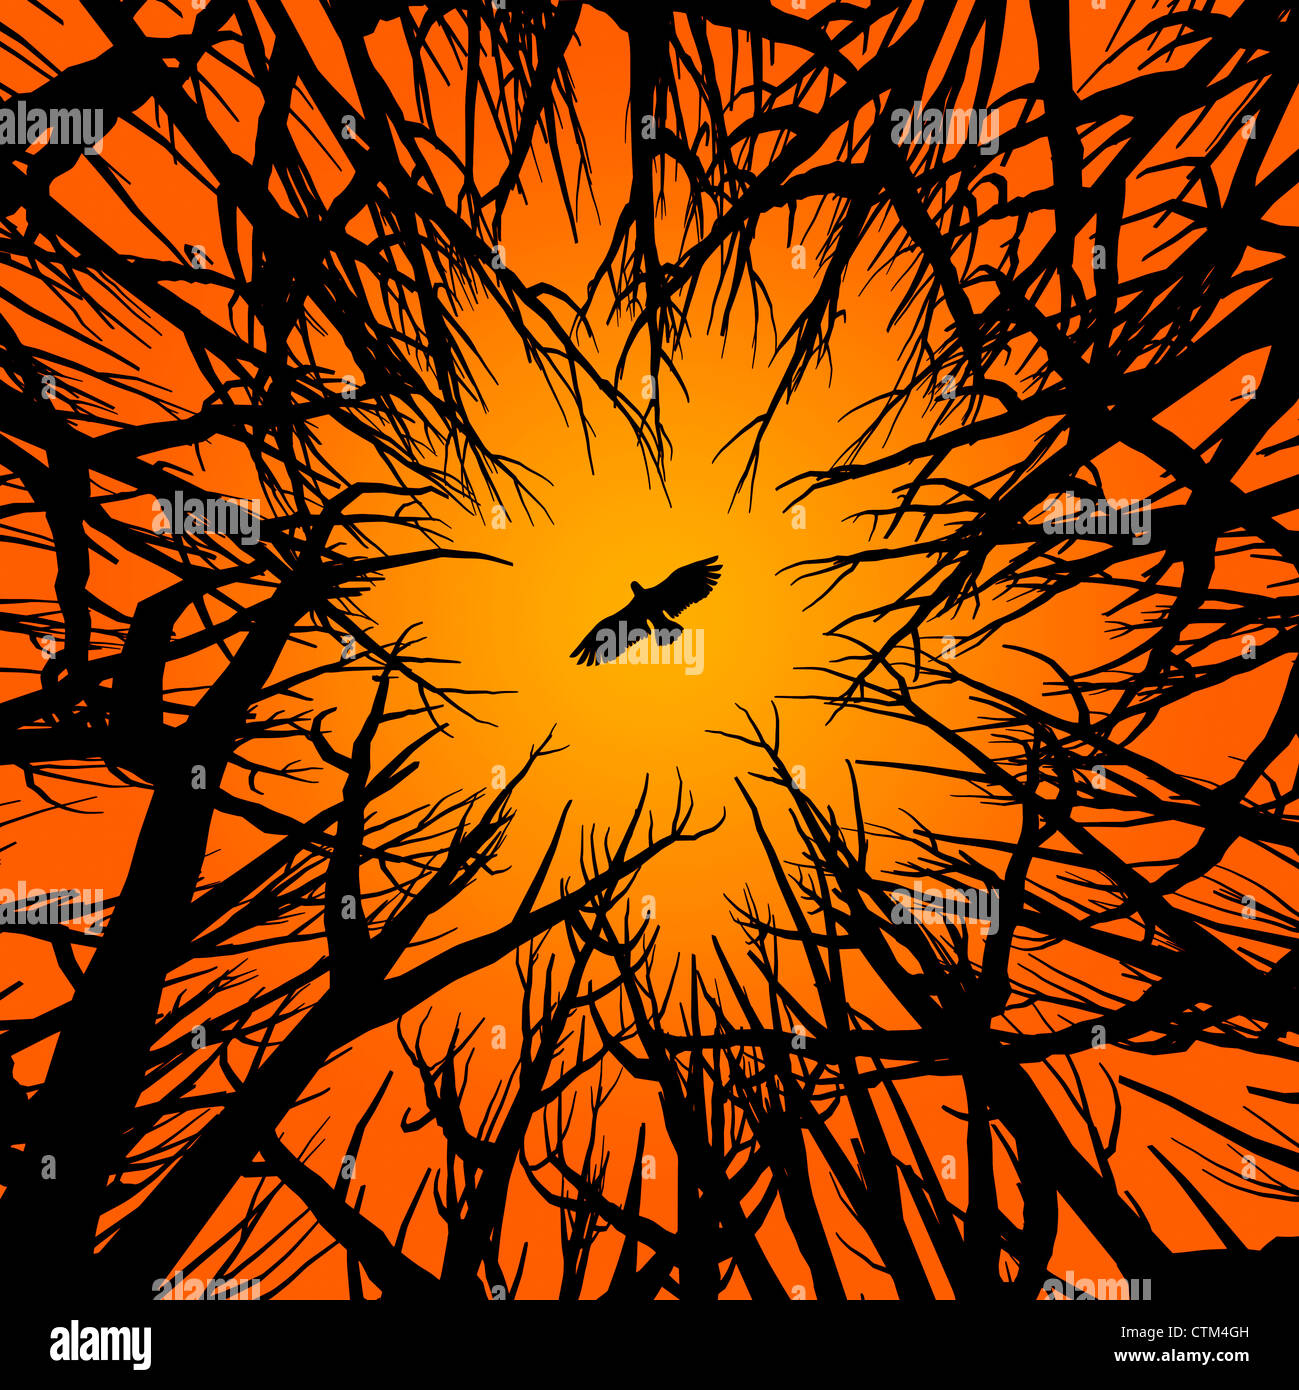 Illustration (Vektor-Stil) der Silhouette von Bäumen und einem fliegenden Raubvogel unter orangefarbenen Himmel Stockfoto